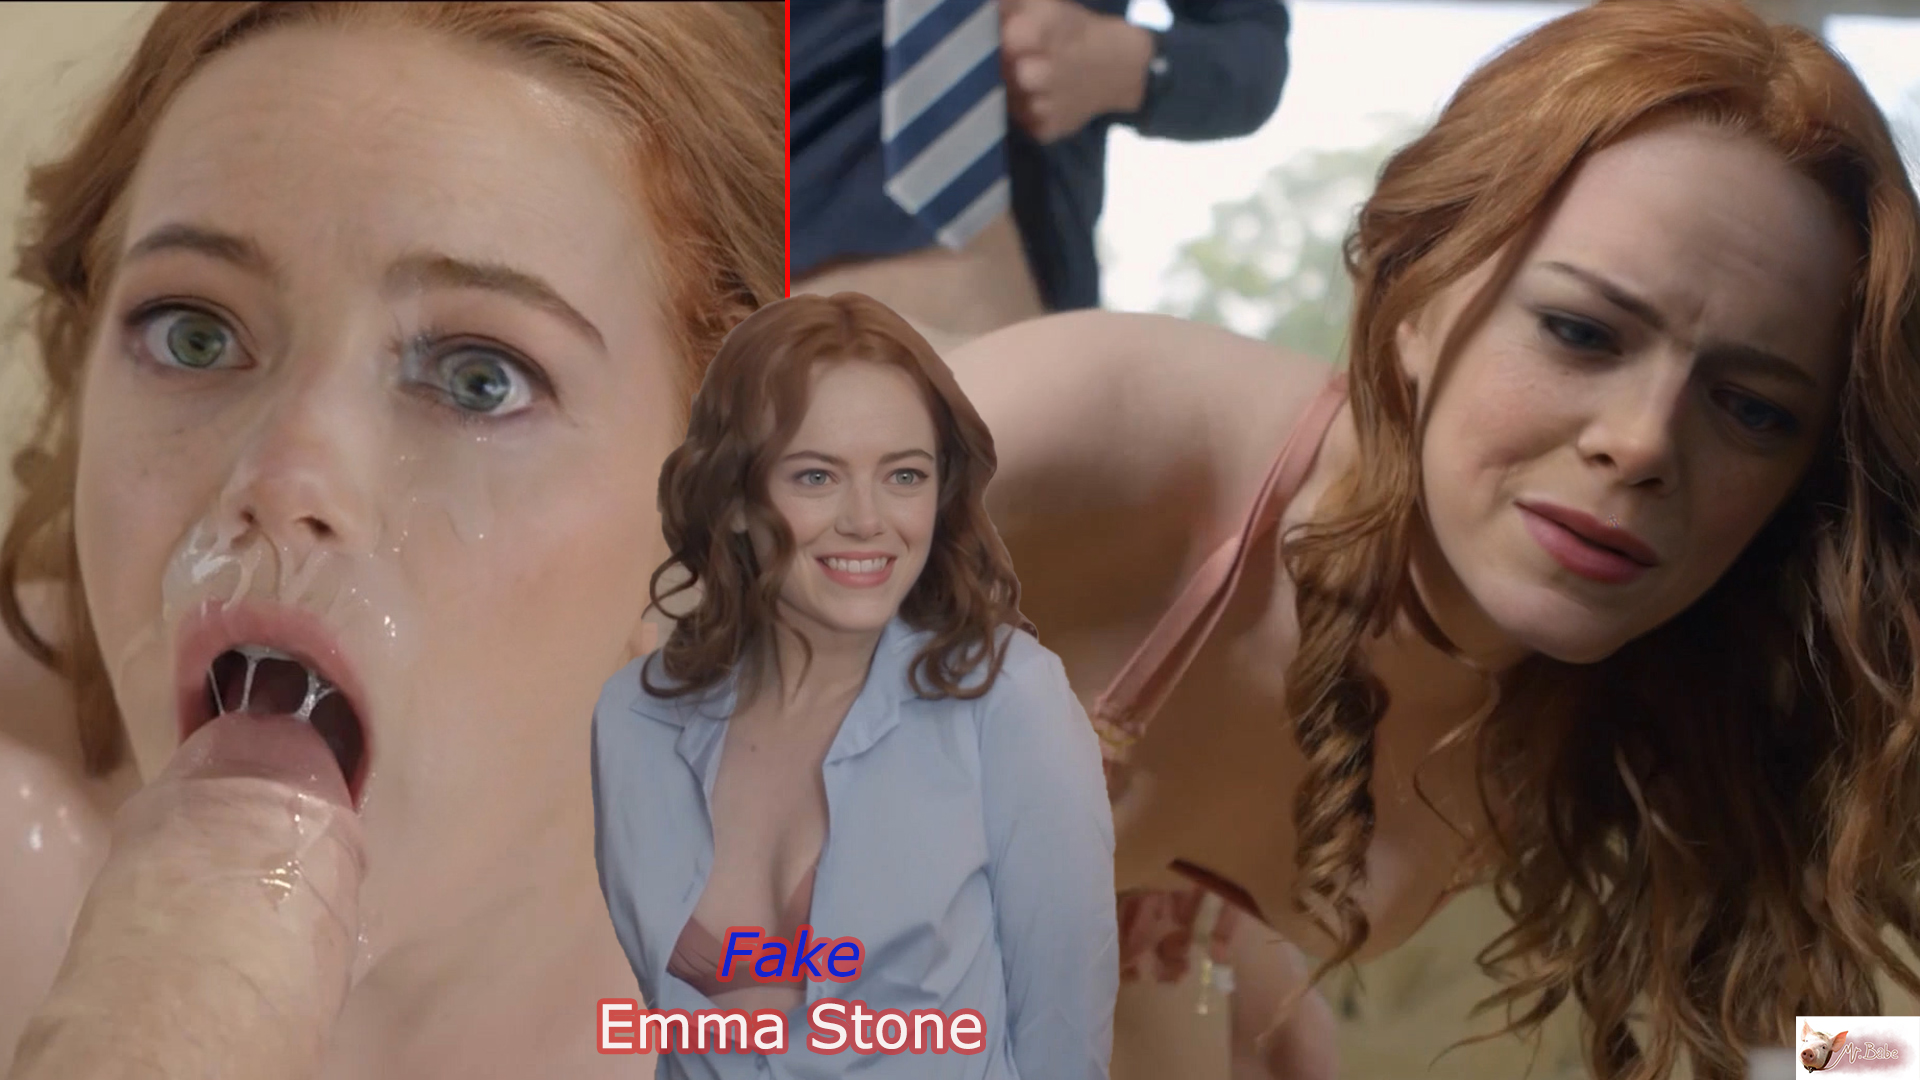 New Xxx Dawnlod - Fake Emma Stone - (trailer) -12- /XXX Parody / Free Download DeepFake Porn  - MrDeepFakes